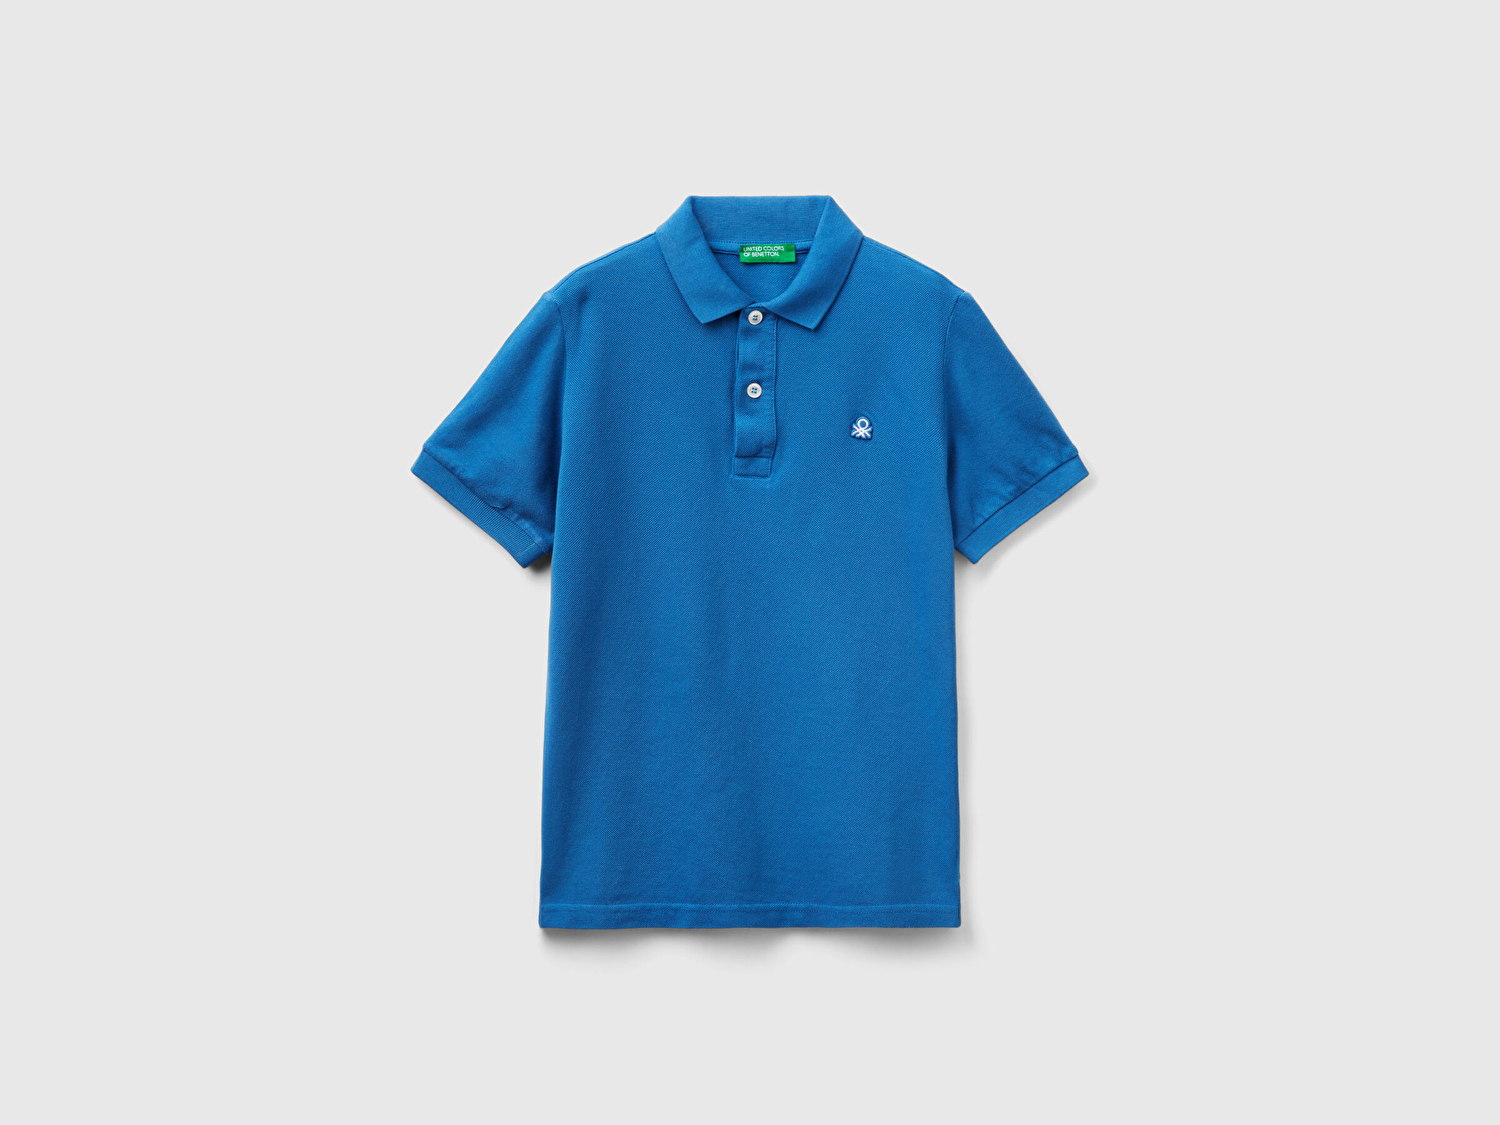 Benetton Erkek Çocuk Saks Mavi Logolu Pike Polo T-Shirt